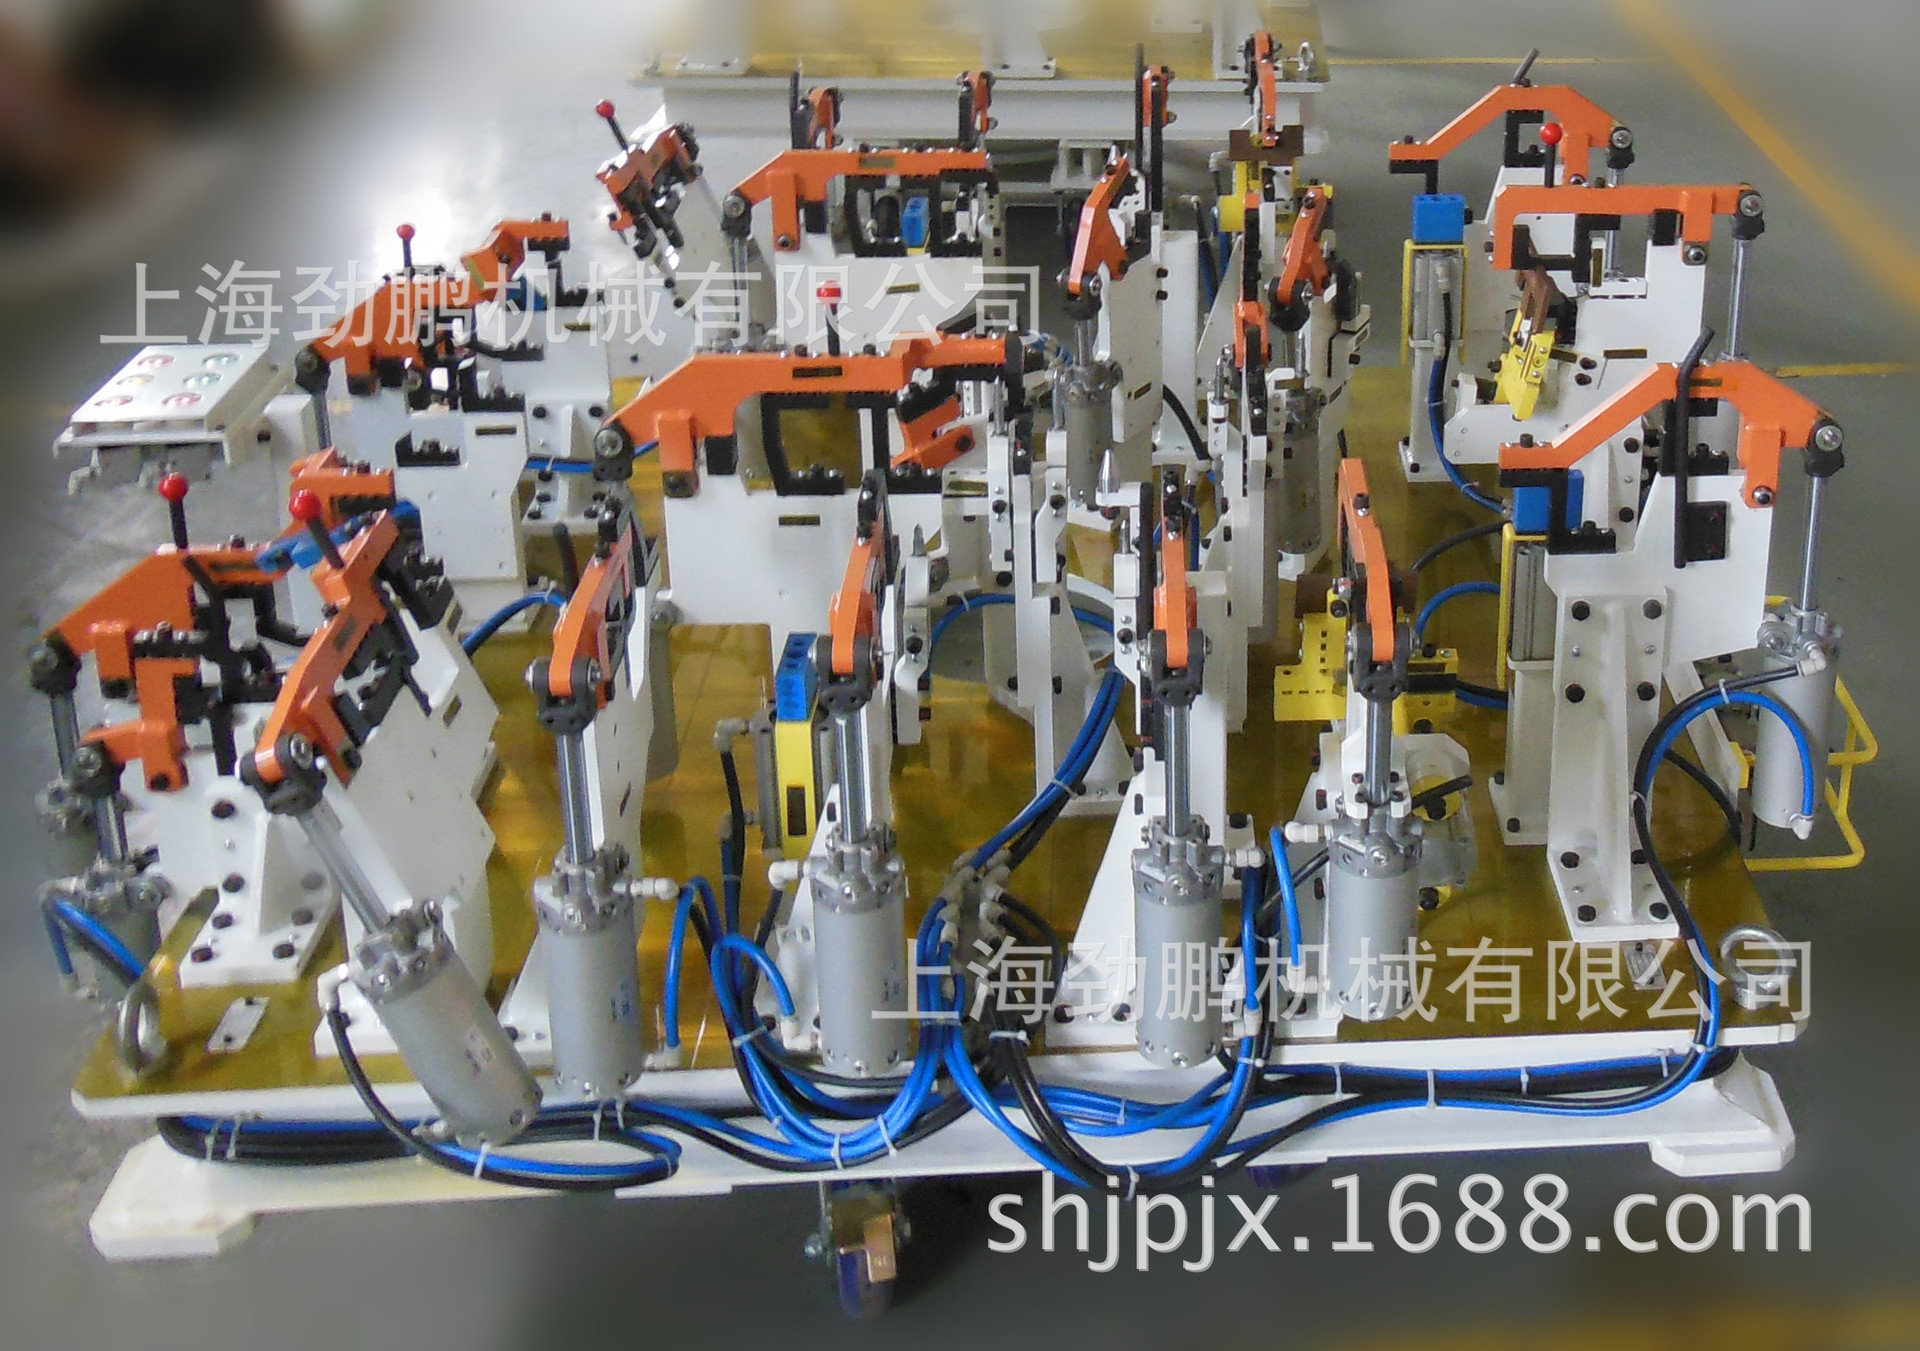 上海厂家 机械加工 汽车夹具 配件加工 表面处理 热处理 机加工